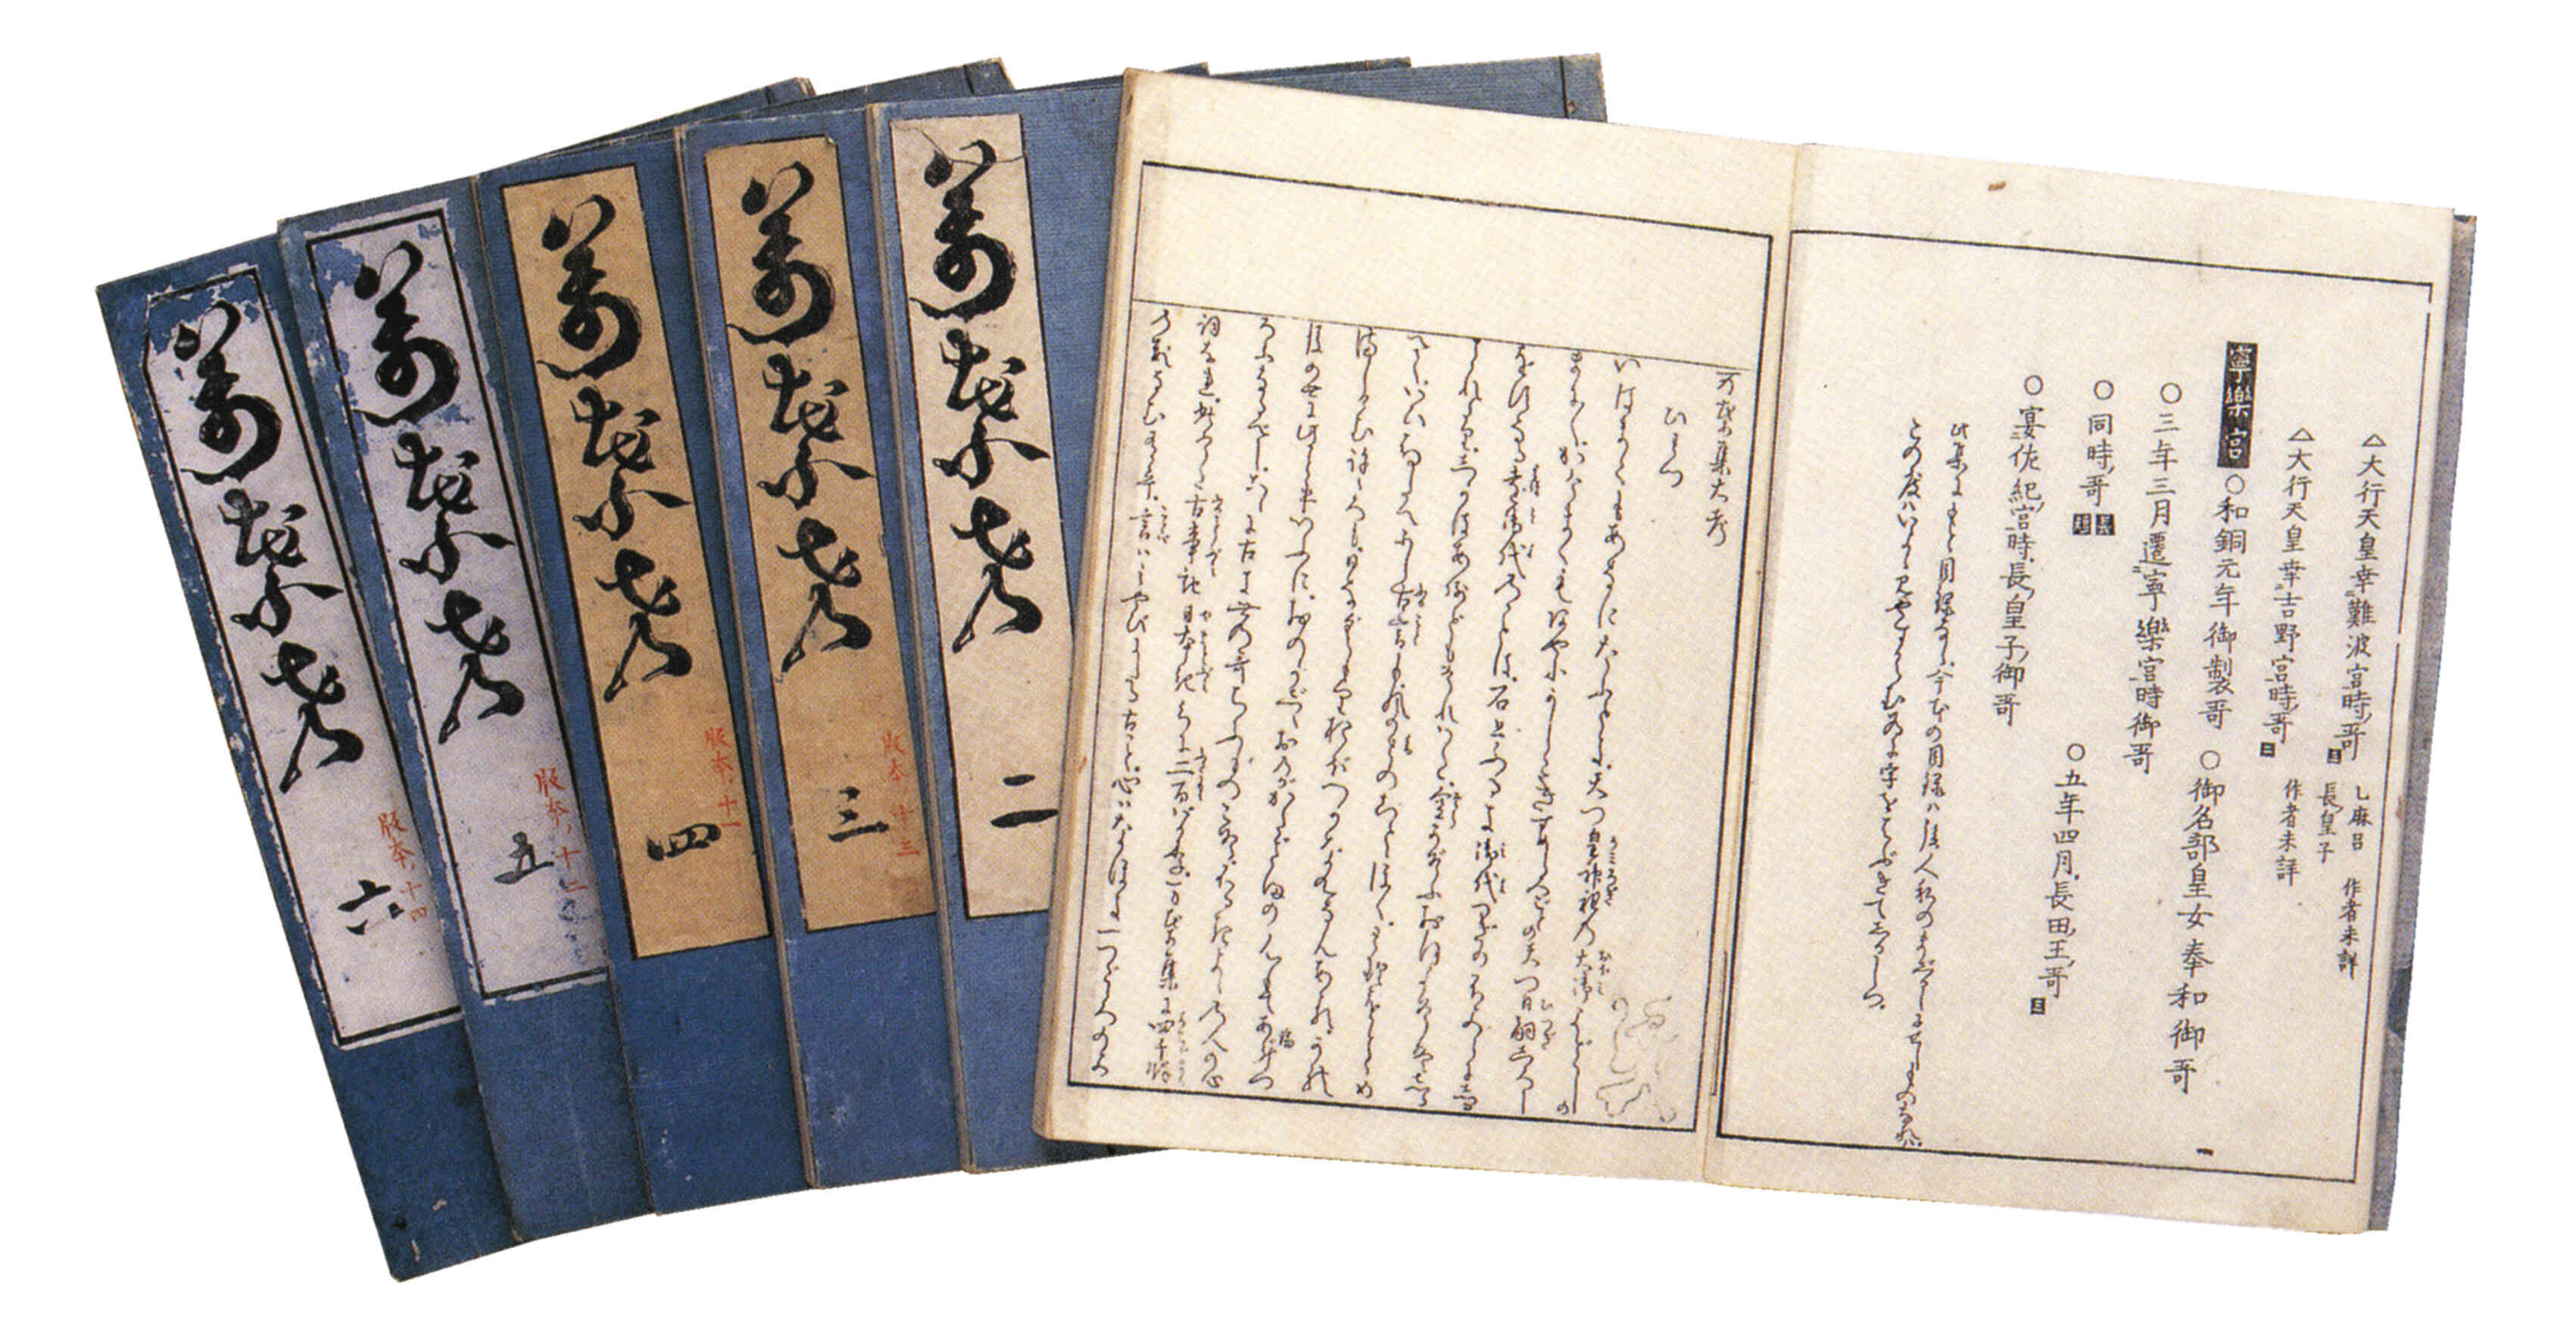 「万葉考」賀茂真淵が、万葉集の歌の読み方、解釈などを記した二十巻の注釈書